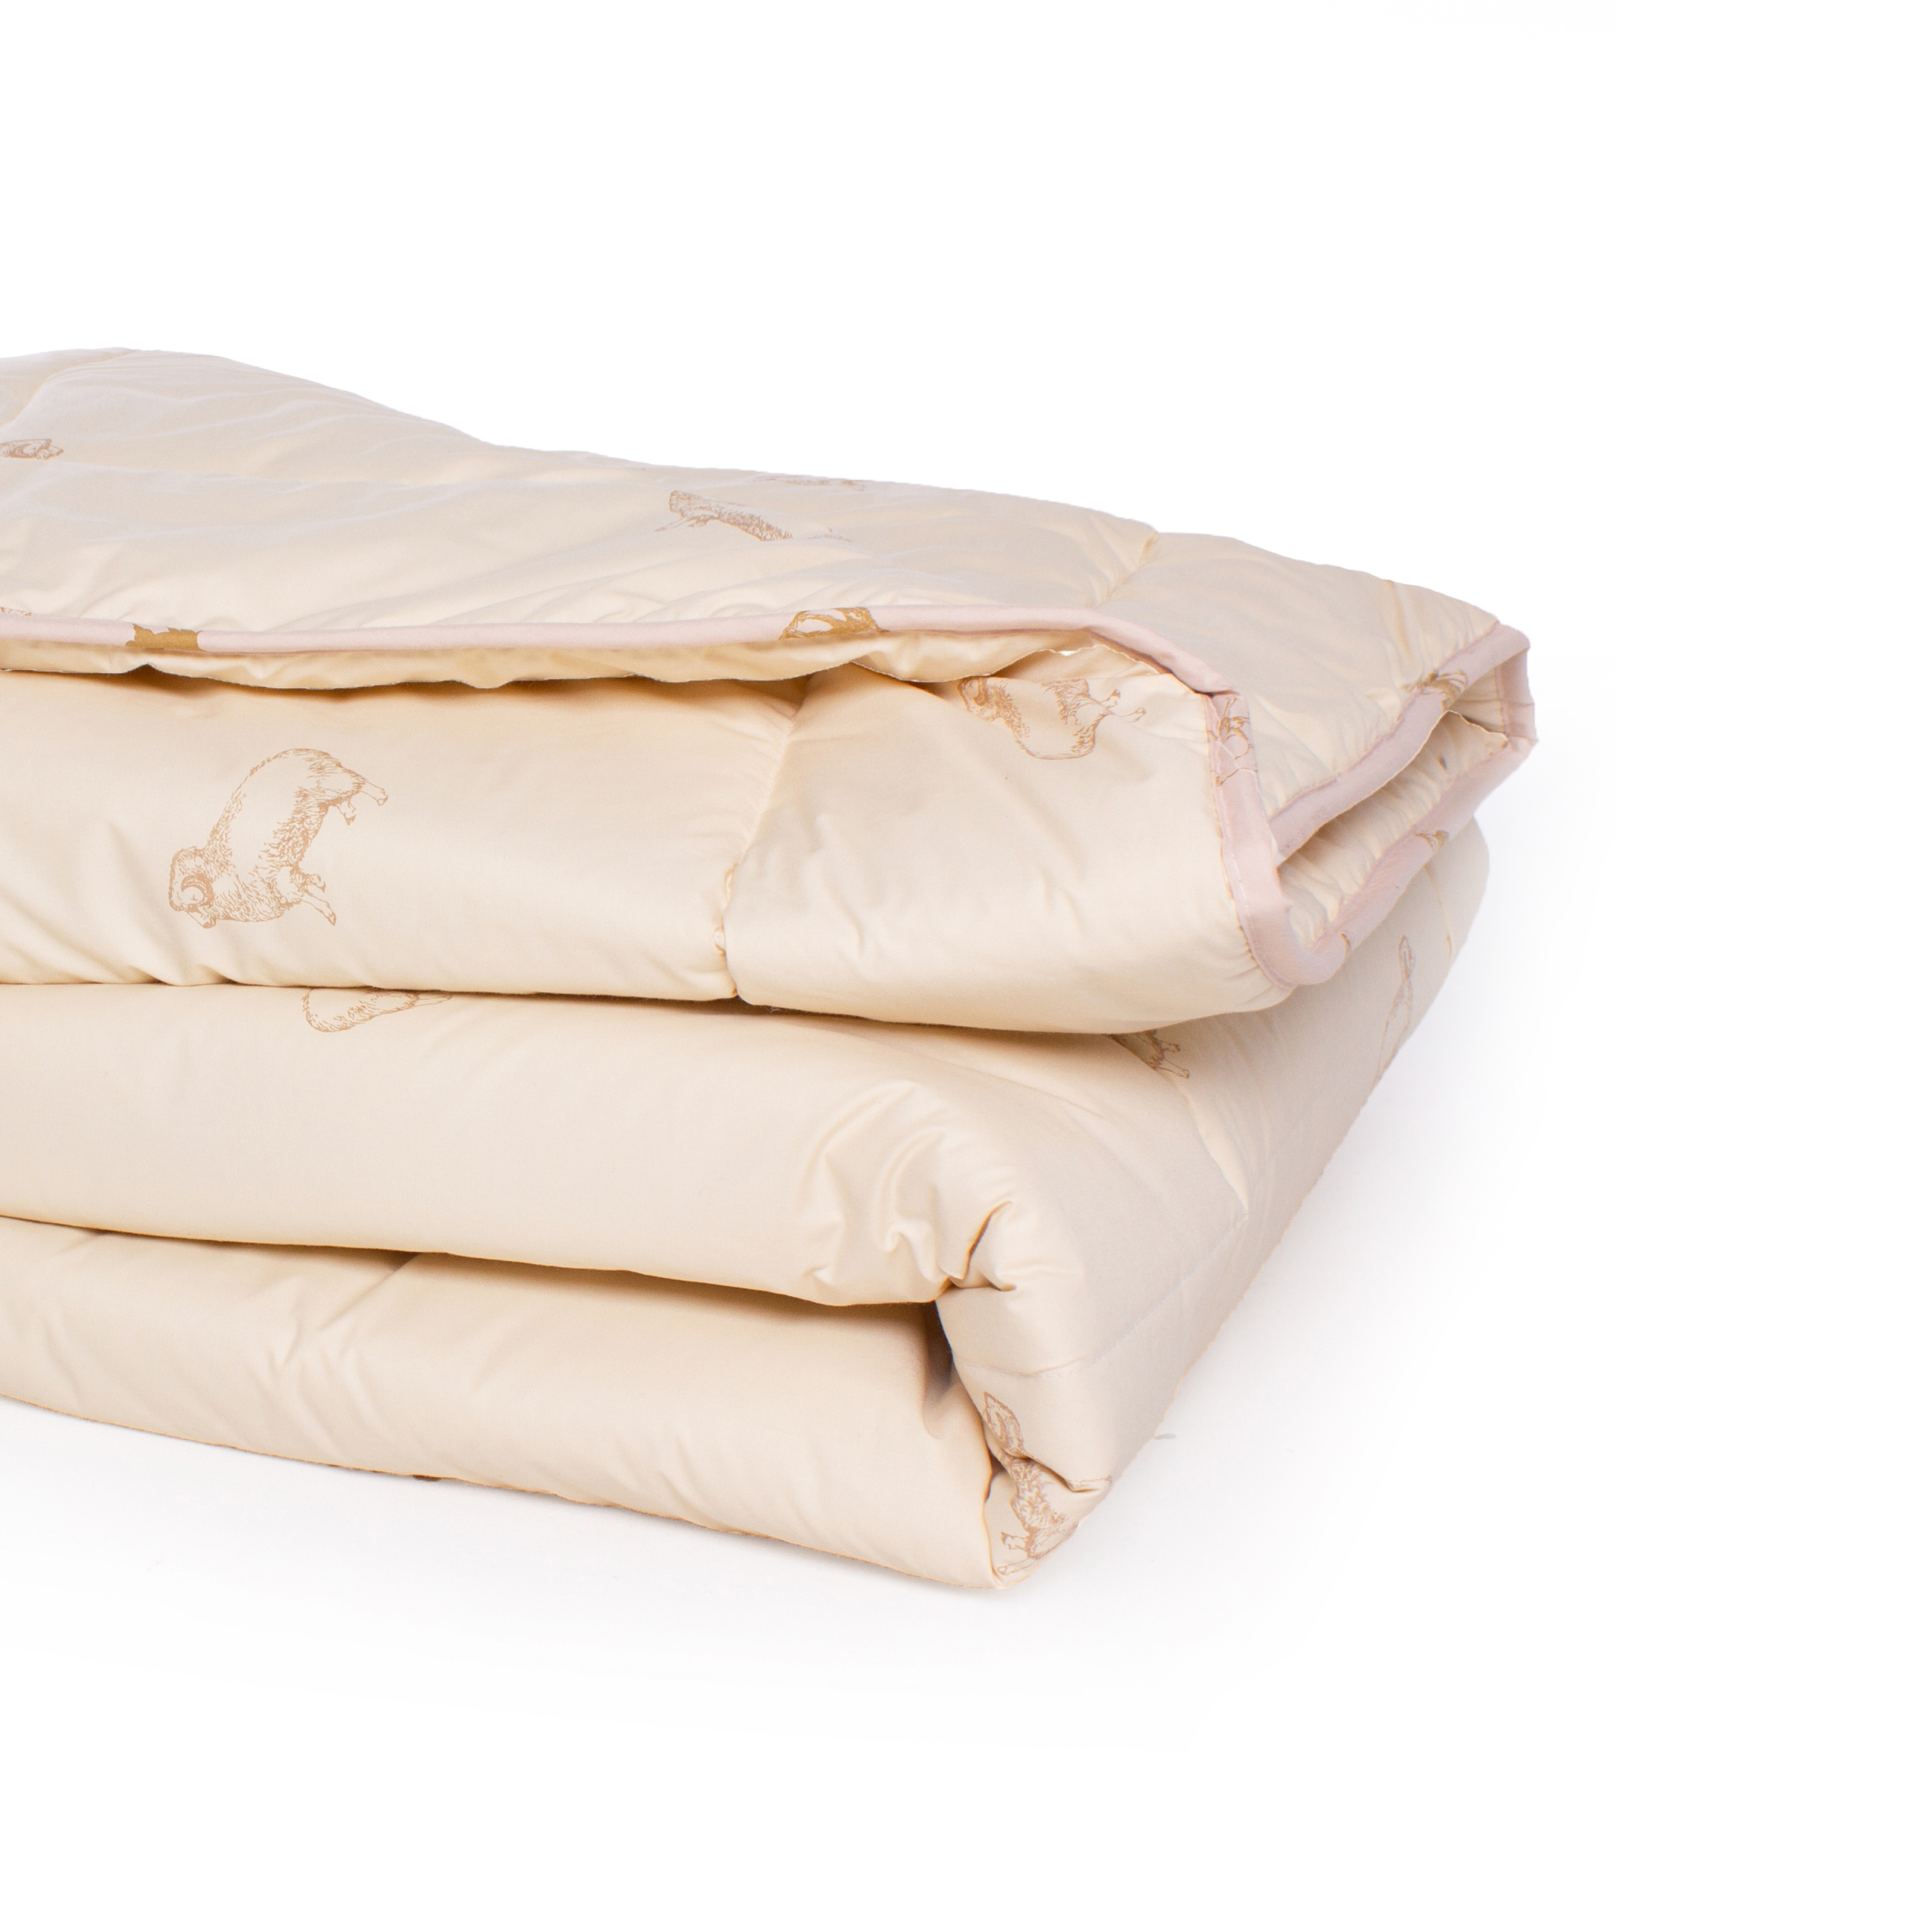 Одеяло шерстяное MirSon Gold Camel №023, демисезонное, 155x215 см, кремовое - фото 3